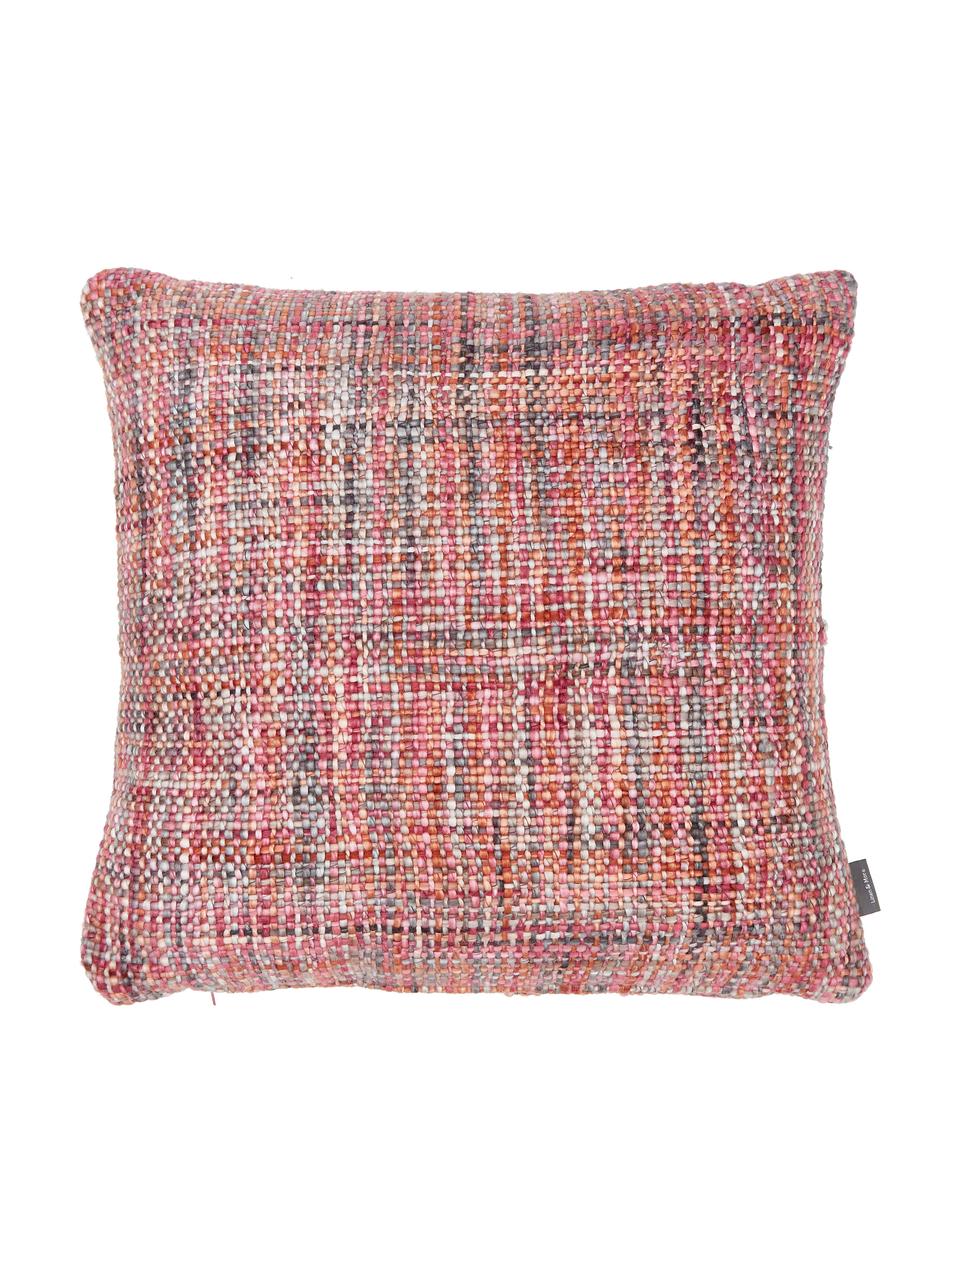 Kissen Tye mit bunter Strukturoberfläche, mit Inlett, Bezug: 95% Baumwolle, 5% Acryl, Mehrfarbig, 45 x 45 cm